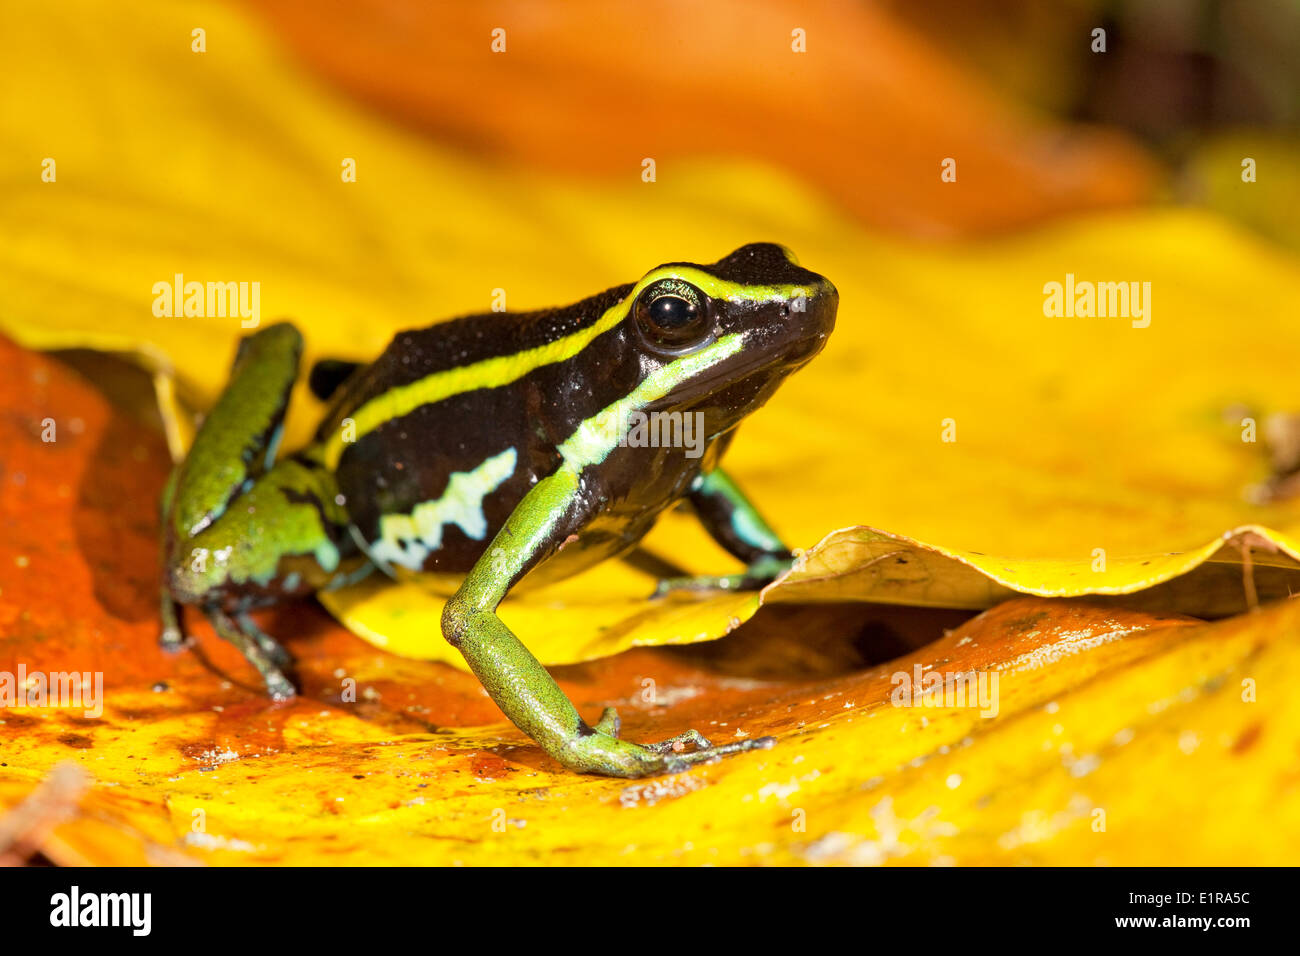 Photo d'un trois-striped poison dart frog sur le sol de la forêt entre les feuilles jaunes Banque D'Images